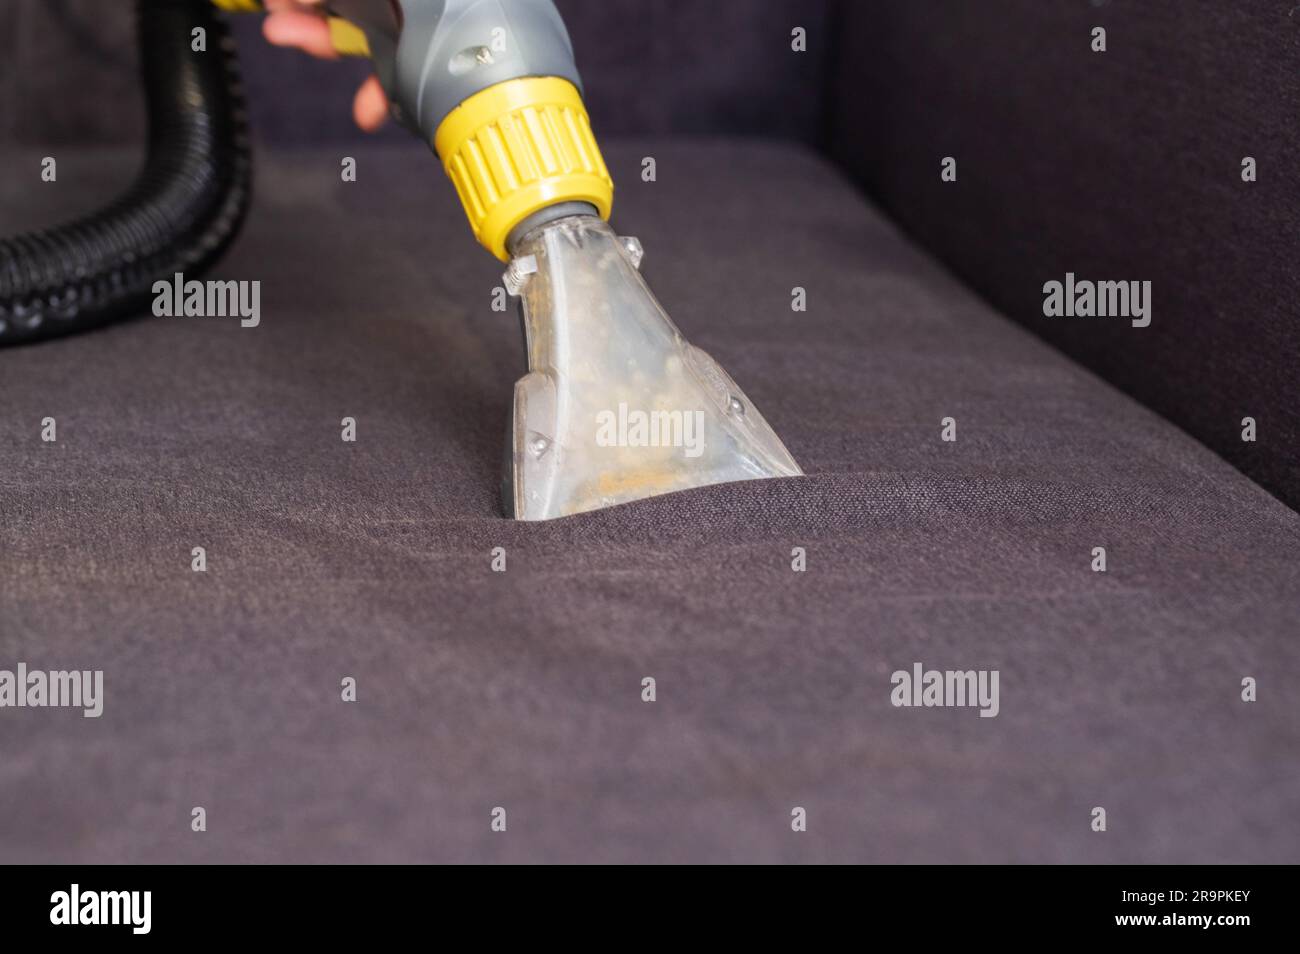 Máquinas de limpieza en seco fotografías e imágenes de alta resolución -  Página 3 - Alamy